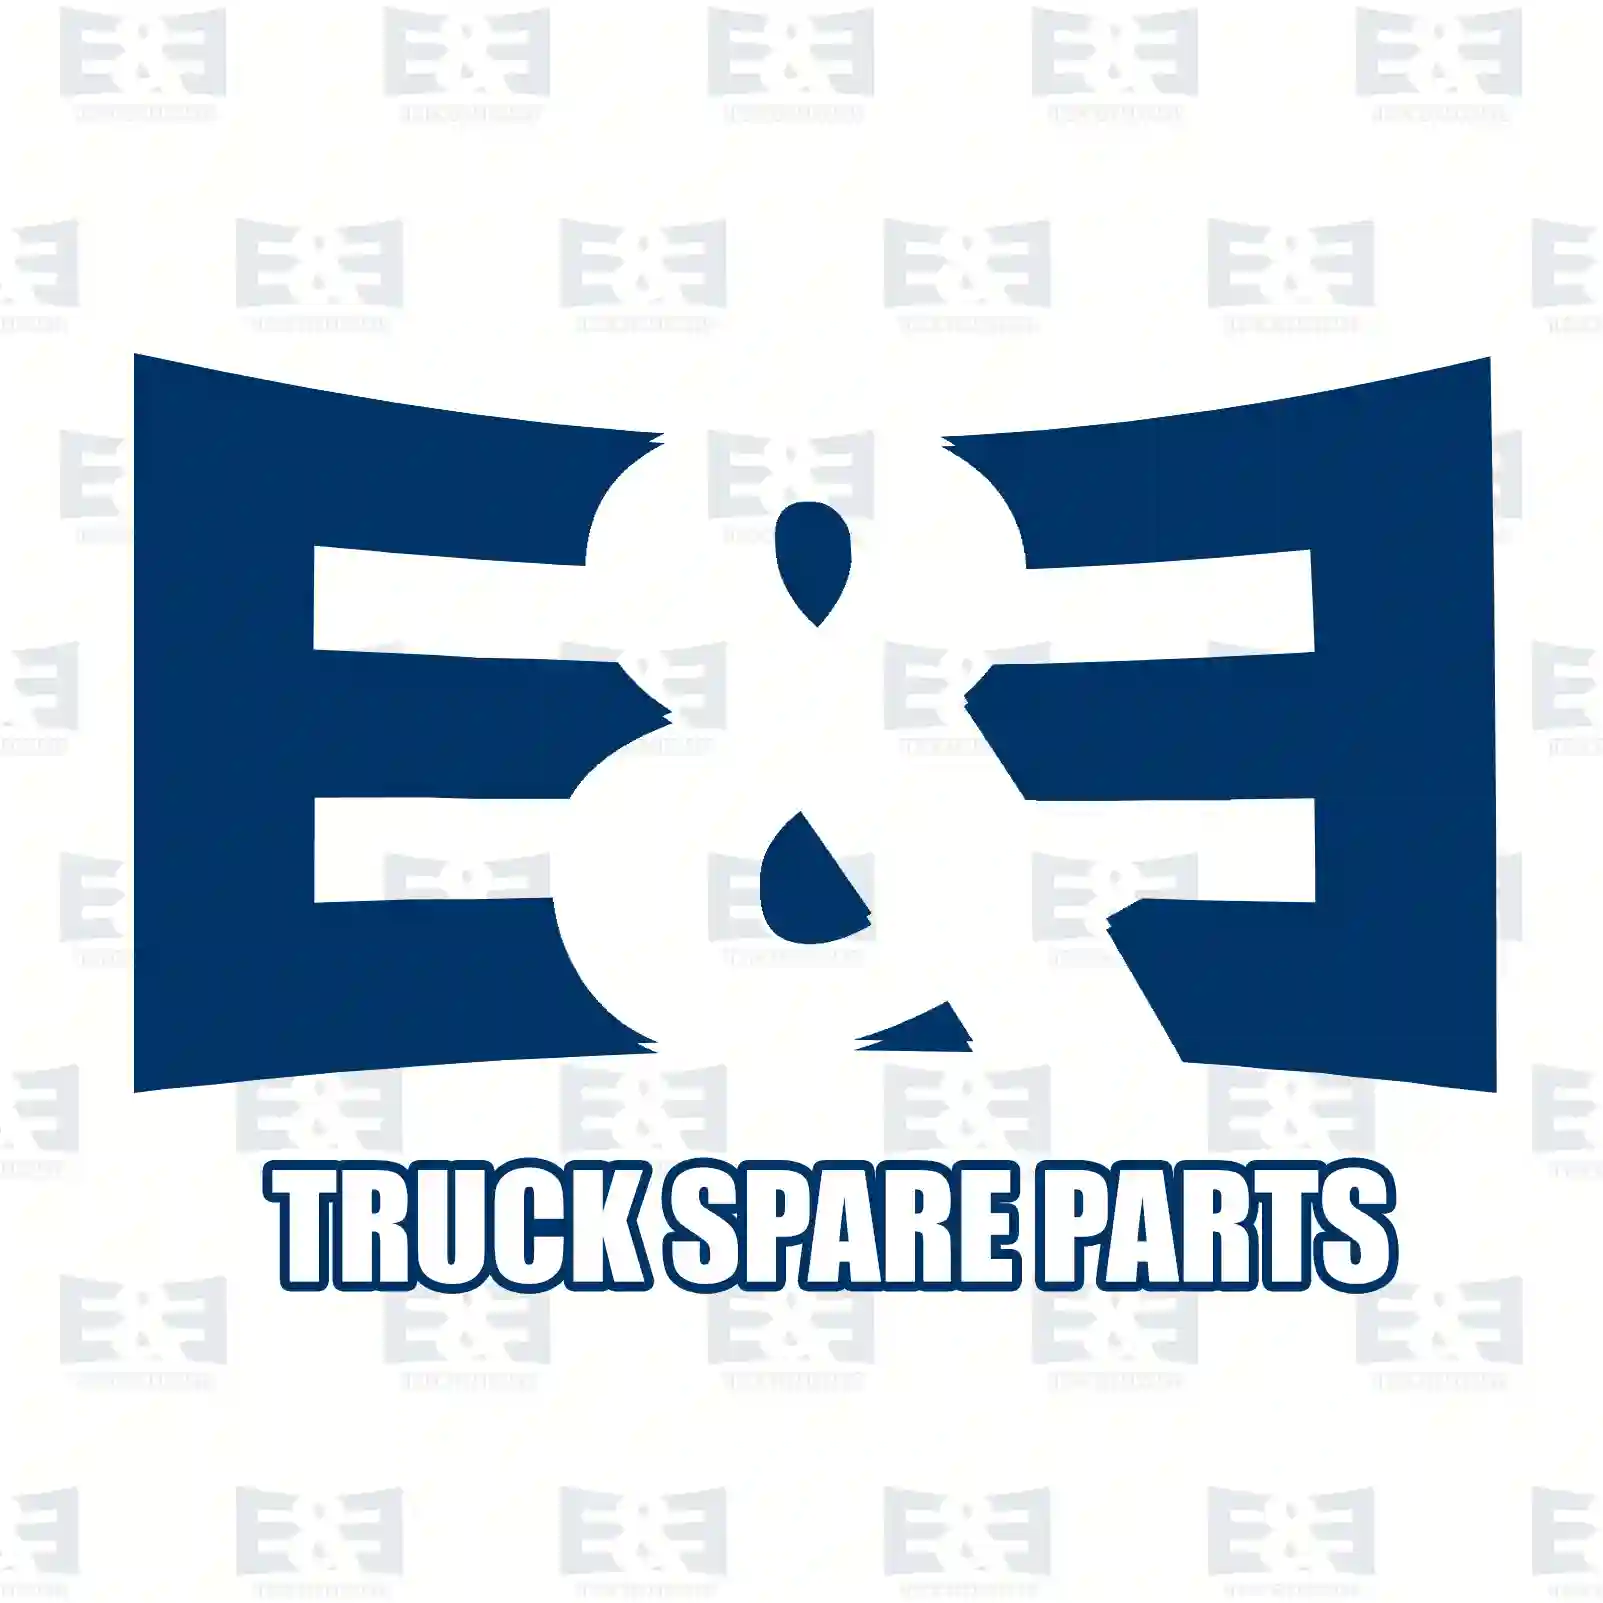 Oil seal, 2E2279126, 0179971847, 0179973647, ZG02720-0008, ||  2E2279126 E&E Truck Spare Parts | Truck Spare Parts, Auotomotive Spare Parts Oil seal, 2E2279126, 0179971847, 0179973647, ZG02720-0008, ||  2E2279126 E&E Truck Spare Parts | Truck Spare Parts, Auotomotive Spare Parts